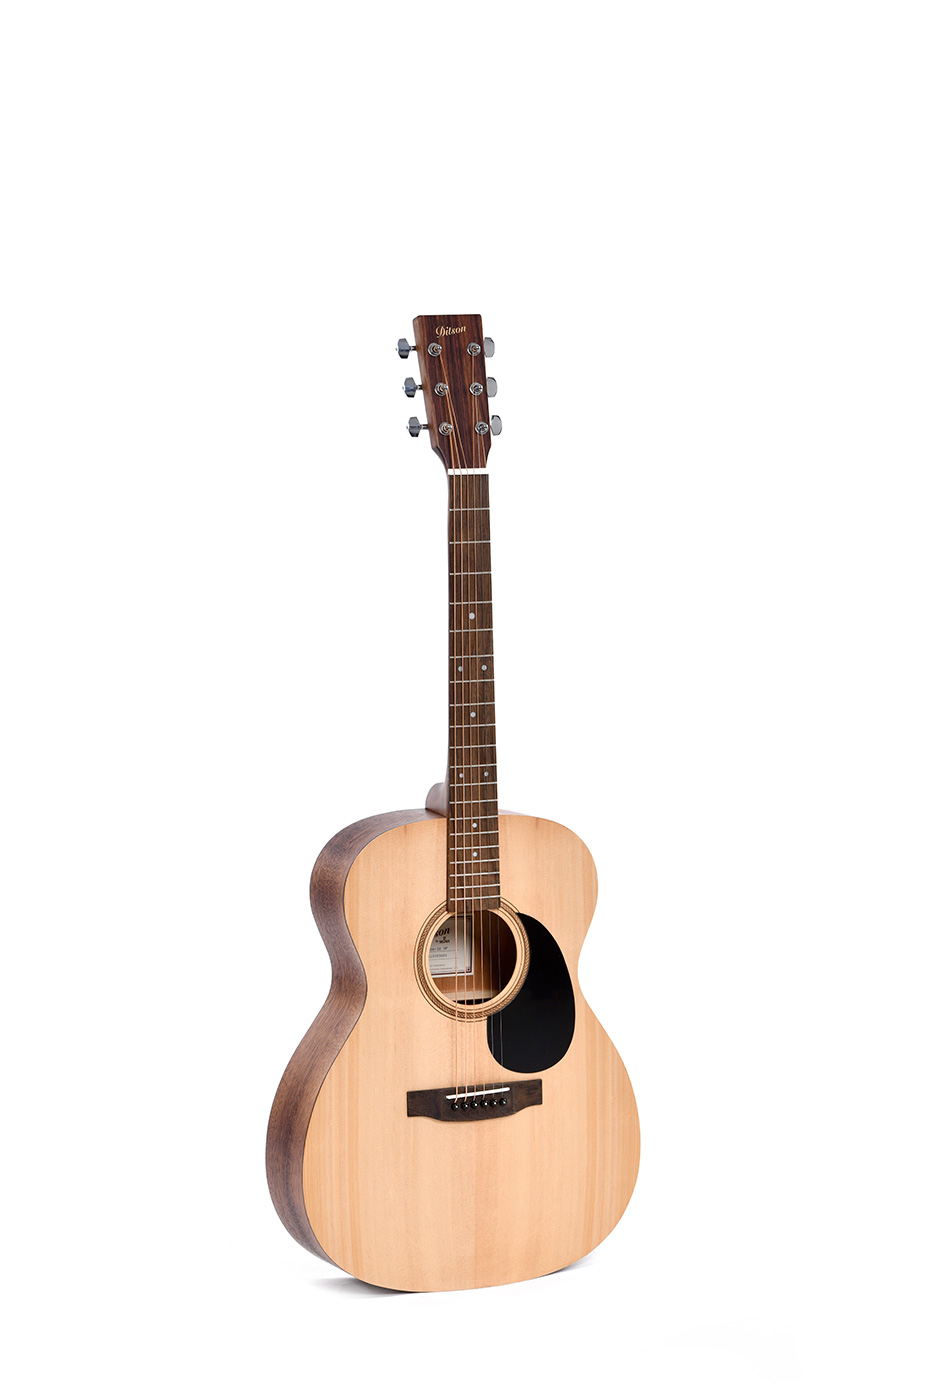 Ditson G-10 Acoustic Guitar